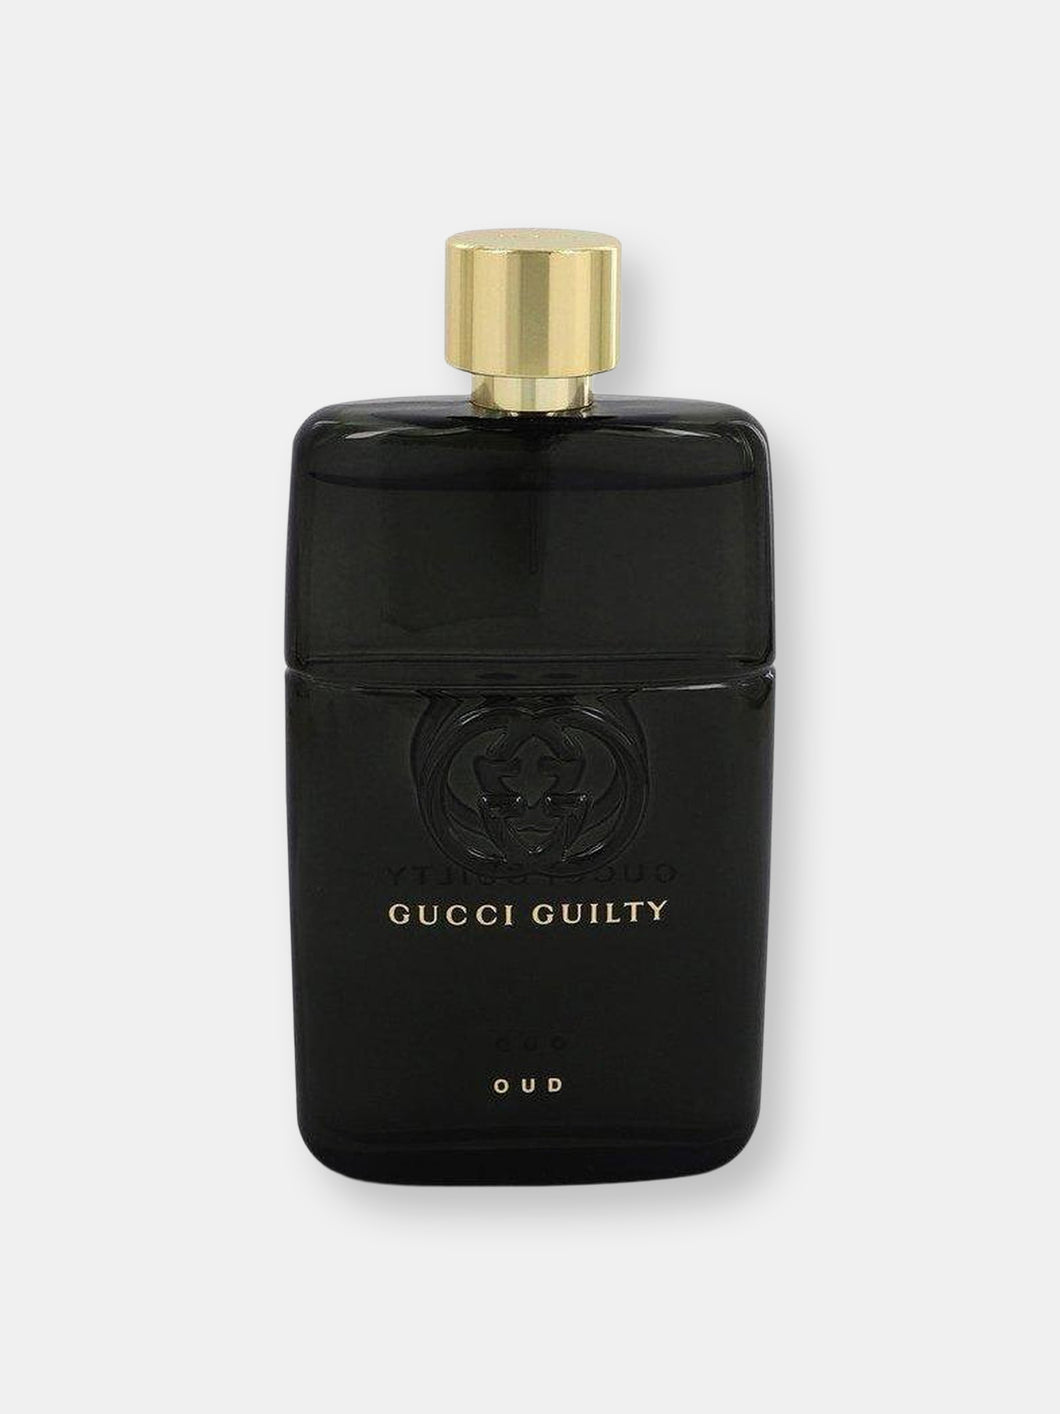 Gucci Guilty Oud Eau De Parfum Spray 3 oz Unisex Tester